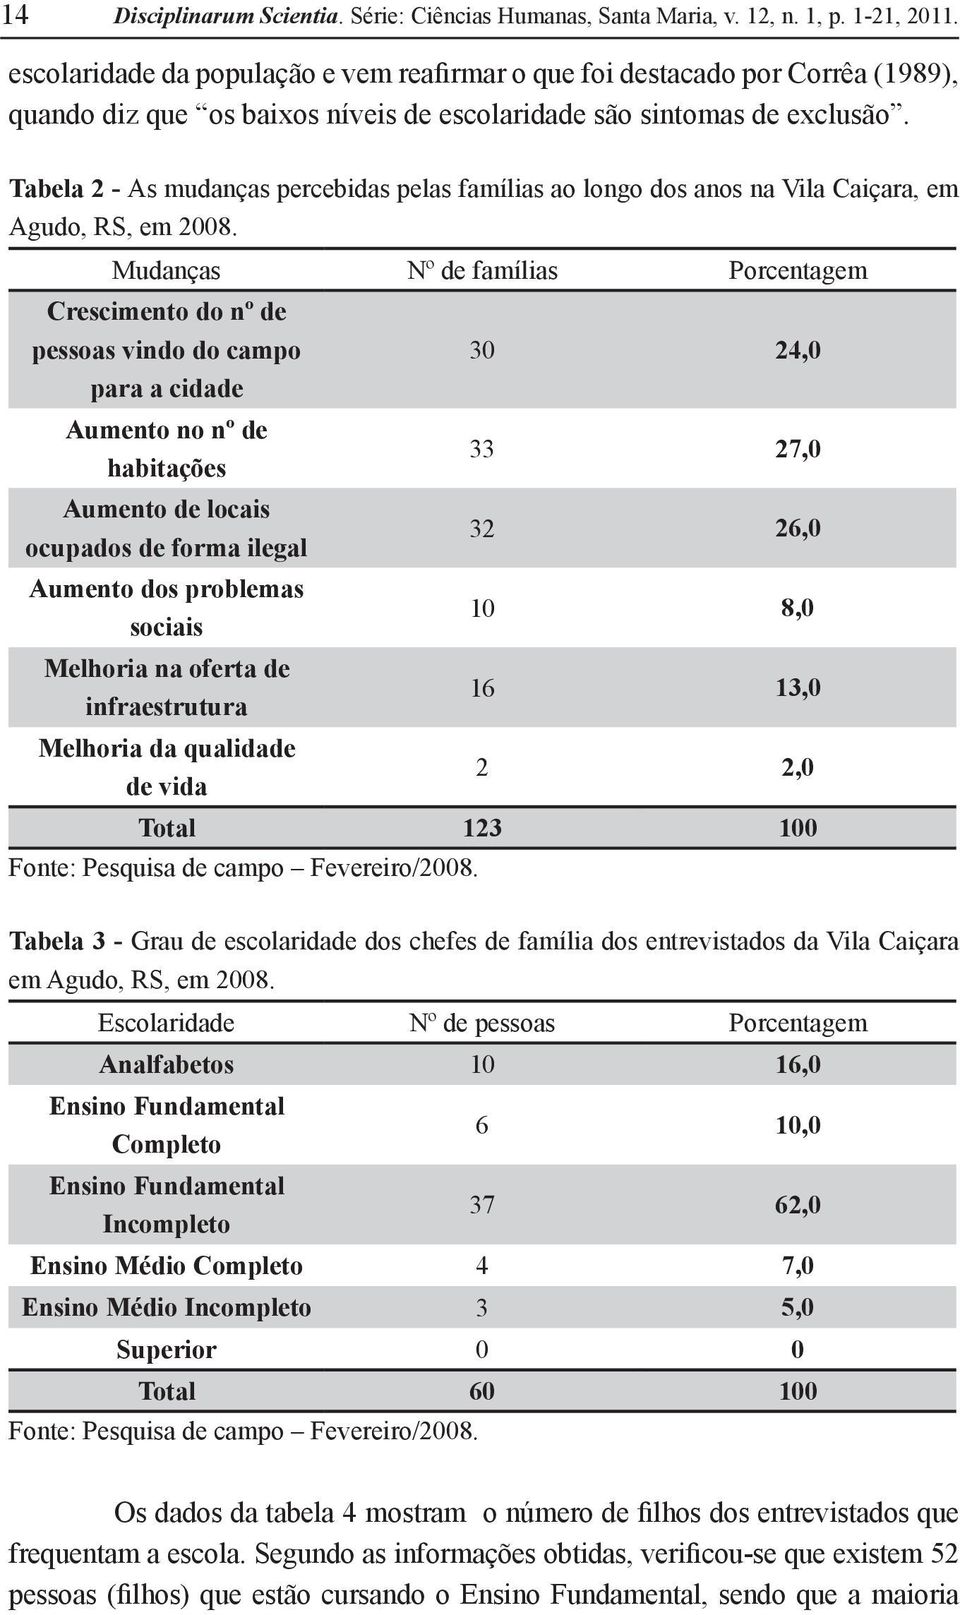 Tabela 2 - As mudanças percebidas pelas famílias ao longo dos anos na Vila Caiçara, em Agudo, RS, em 2008.